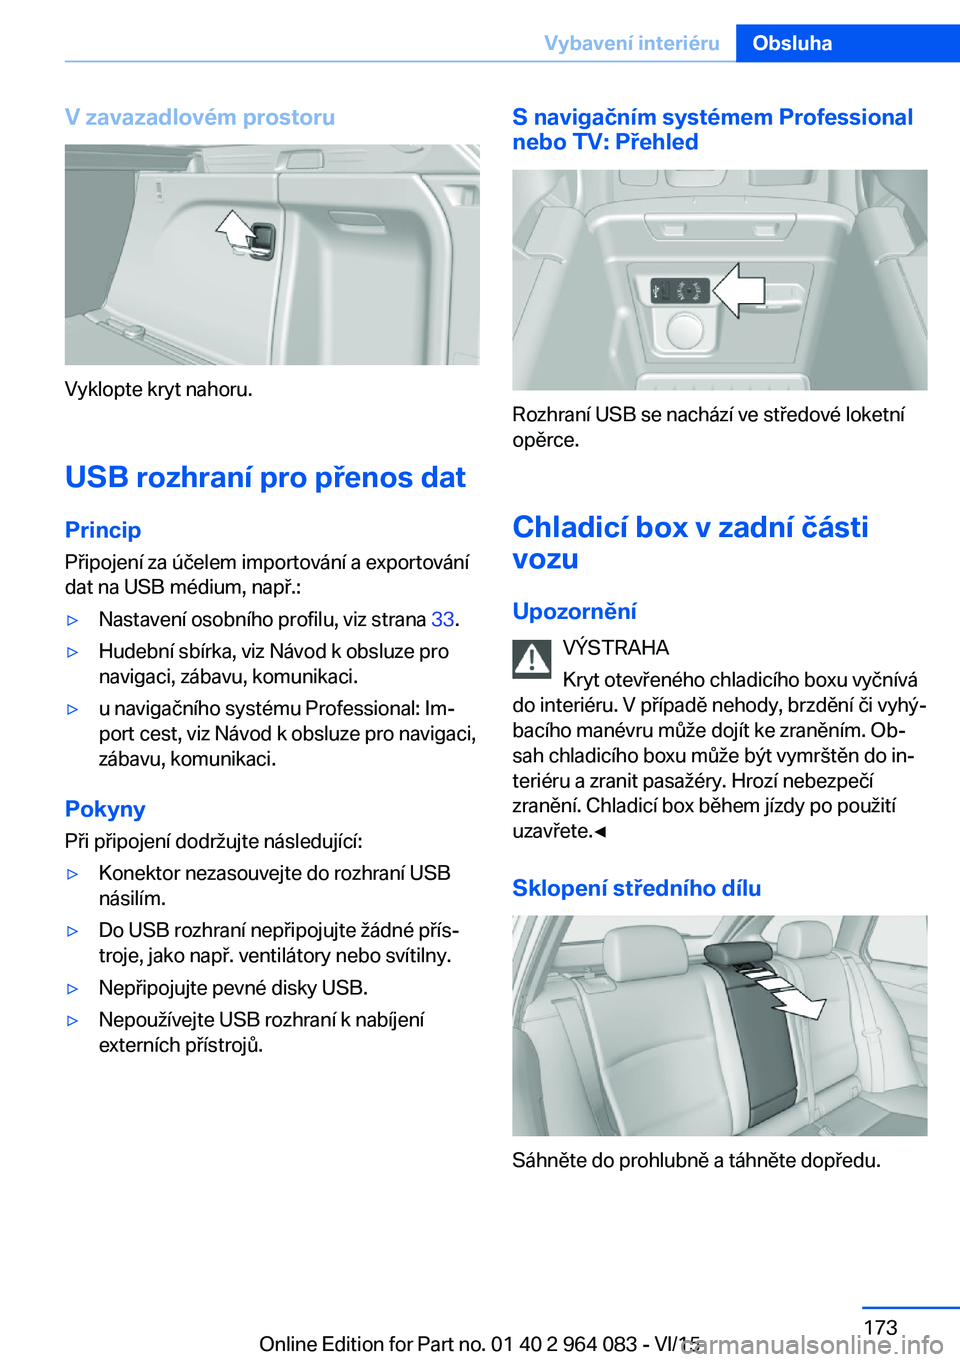 BMW X6 M 2016  Návod na použití (in Czech) V zavazadlovém prostoru
Vyklopte kryt nahoru.
USB rozhraní pro přenos dat
Princip Připojení za účelem importování a exportování
dat na USB médium, např.:
▷Nastavení osobního profilu, 